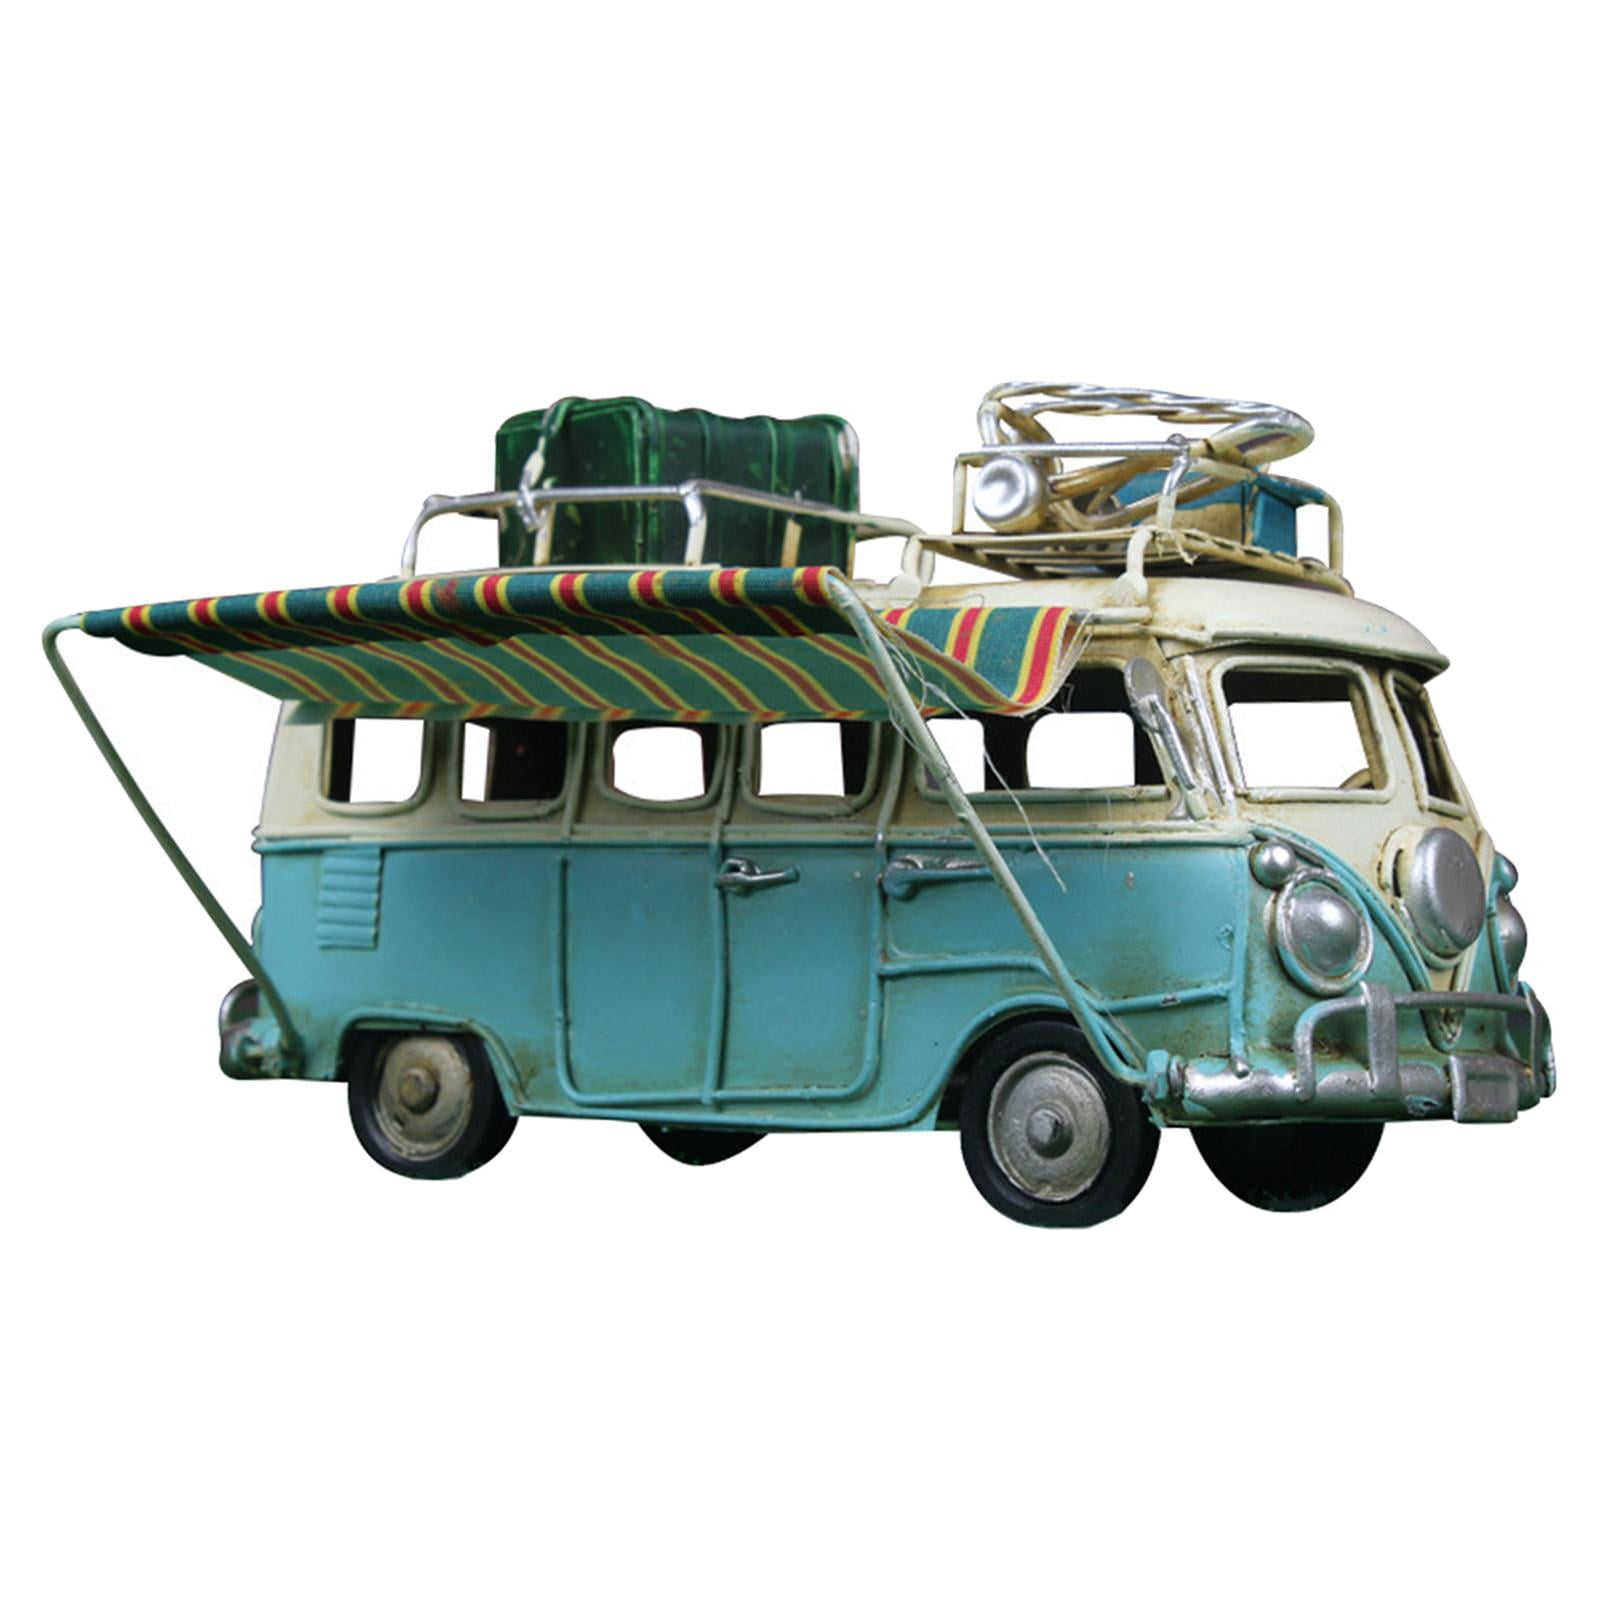 Vintage Blue VOLKSWAGEN Camper Van Car Retro Model Toy Figure Vehicle Ornament for sale online 